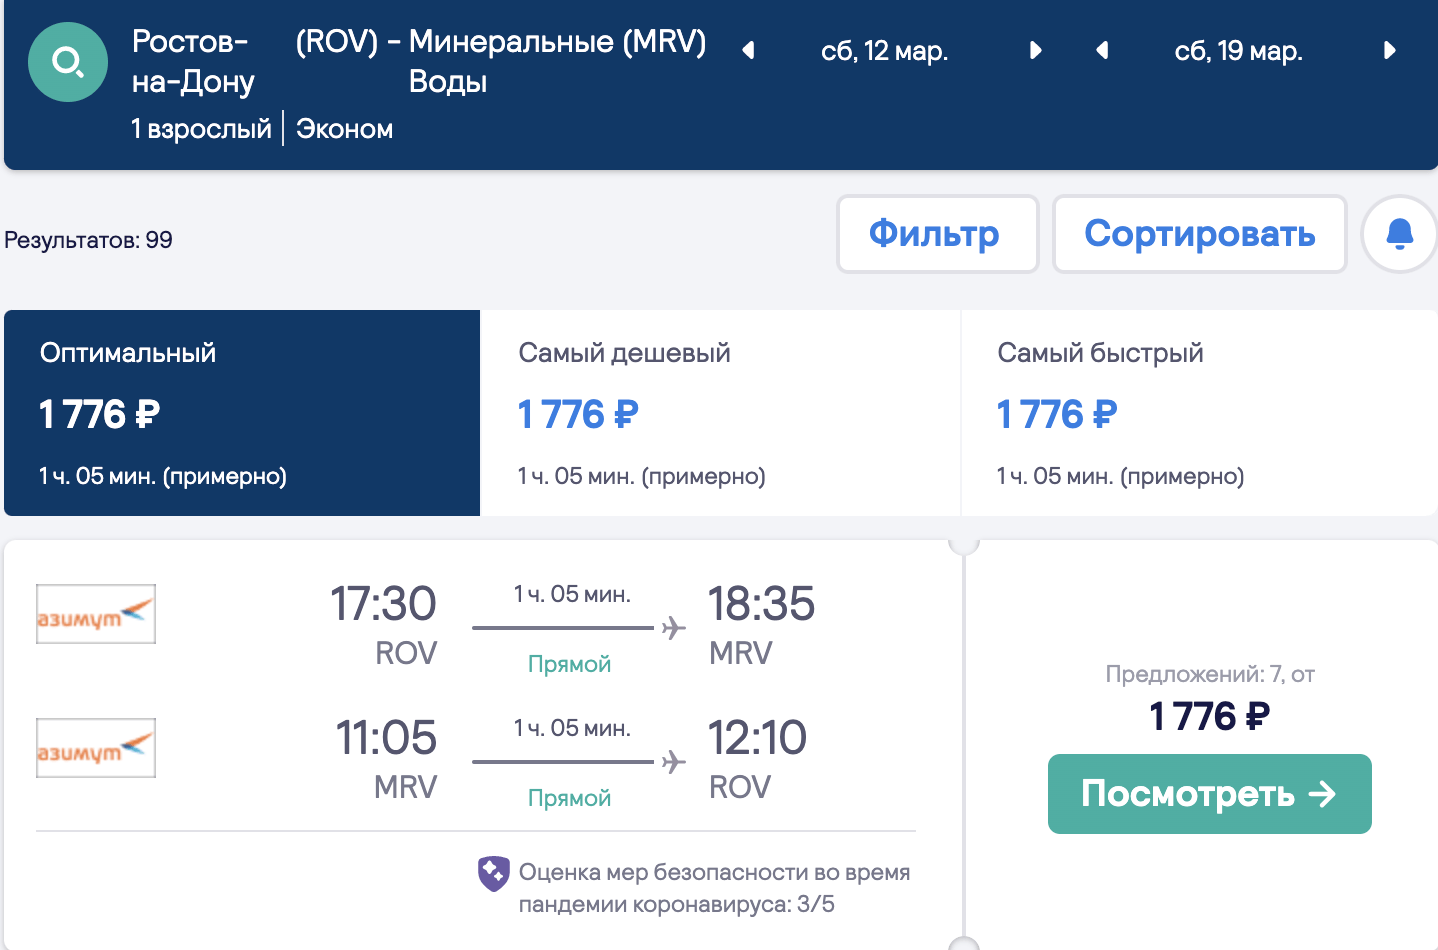 Veliki izbor jeftinih letova iz regija za Krasnodar i Minvody od 1800₽ povratnog putovanja